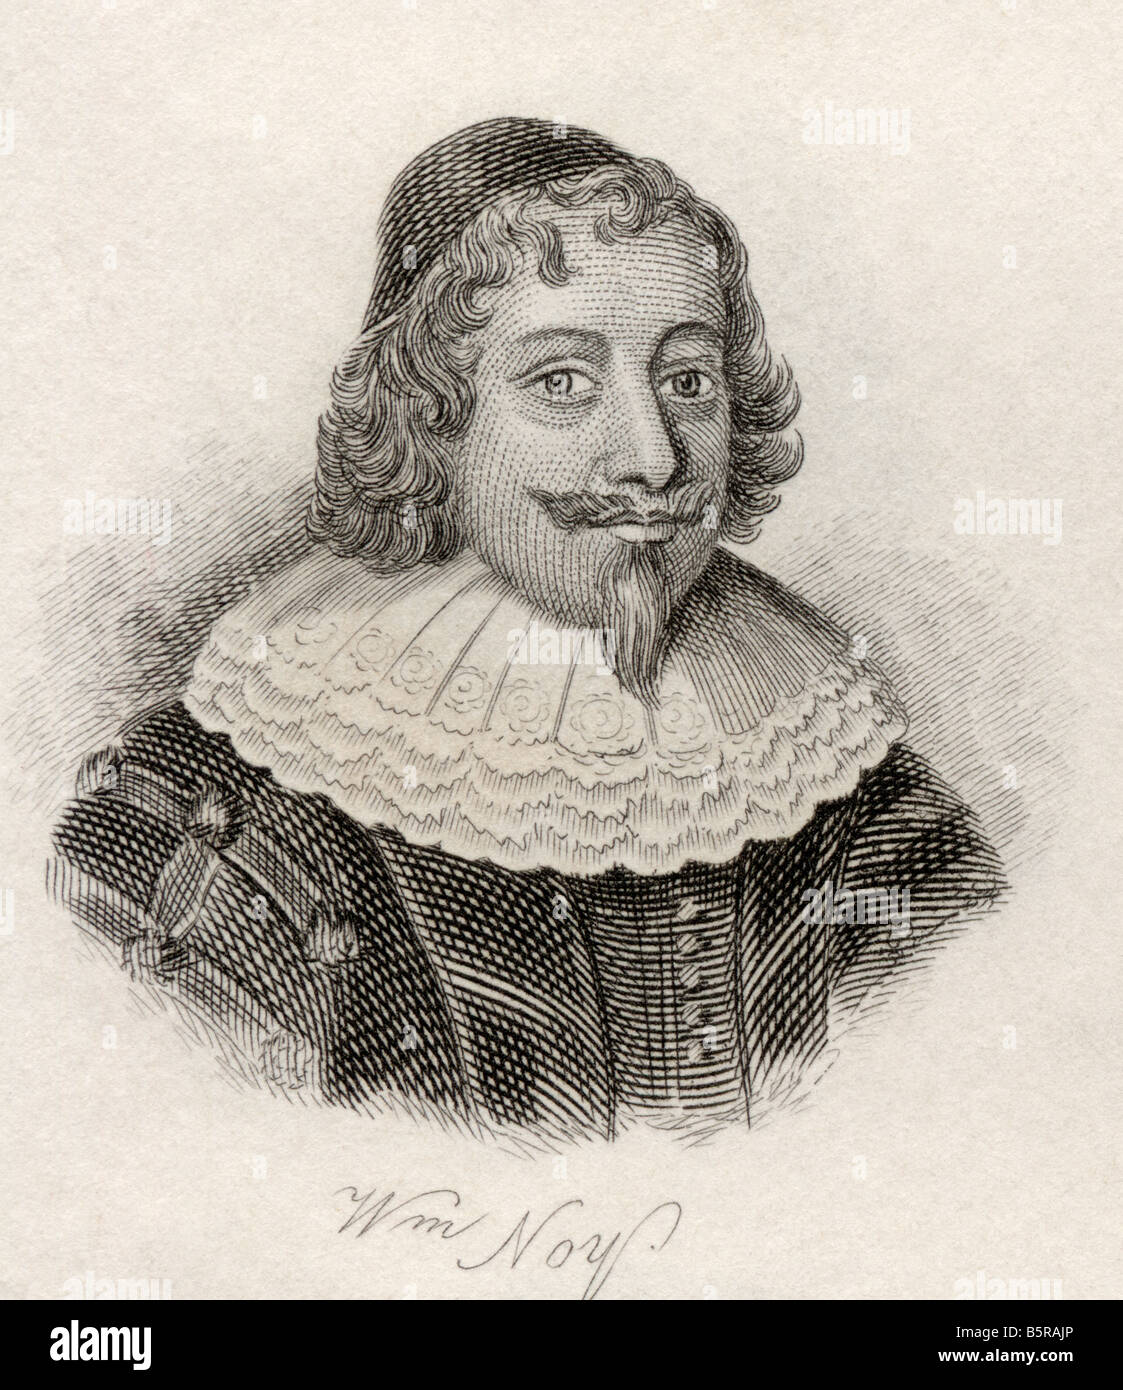 William Noy, 1577 - 1634. Juriste britannique. Extrait du livre Crabb's Historical Dictionary, publié en 1825. Banque D'Images